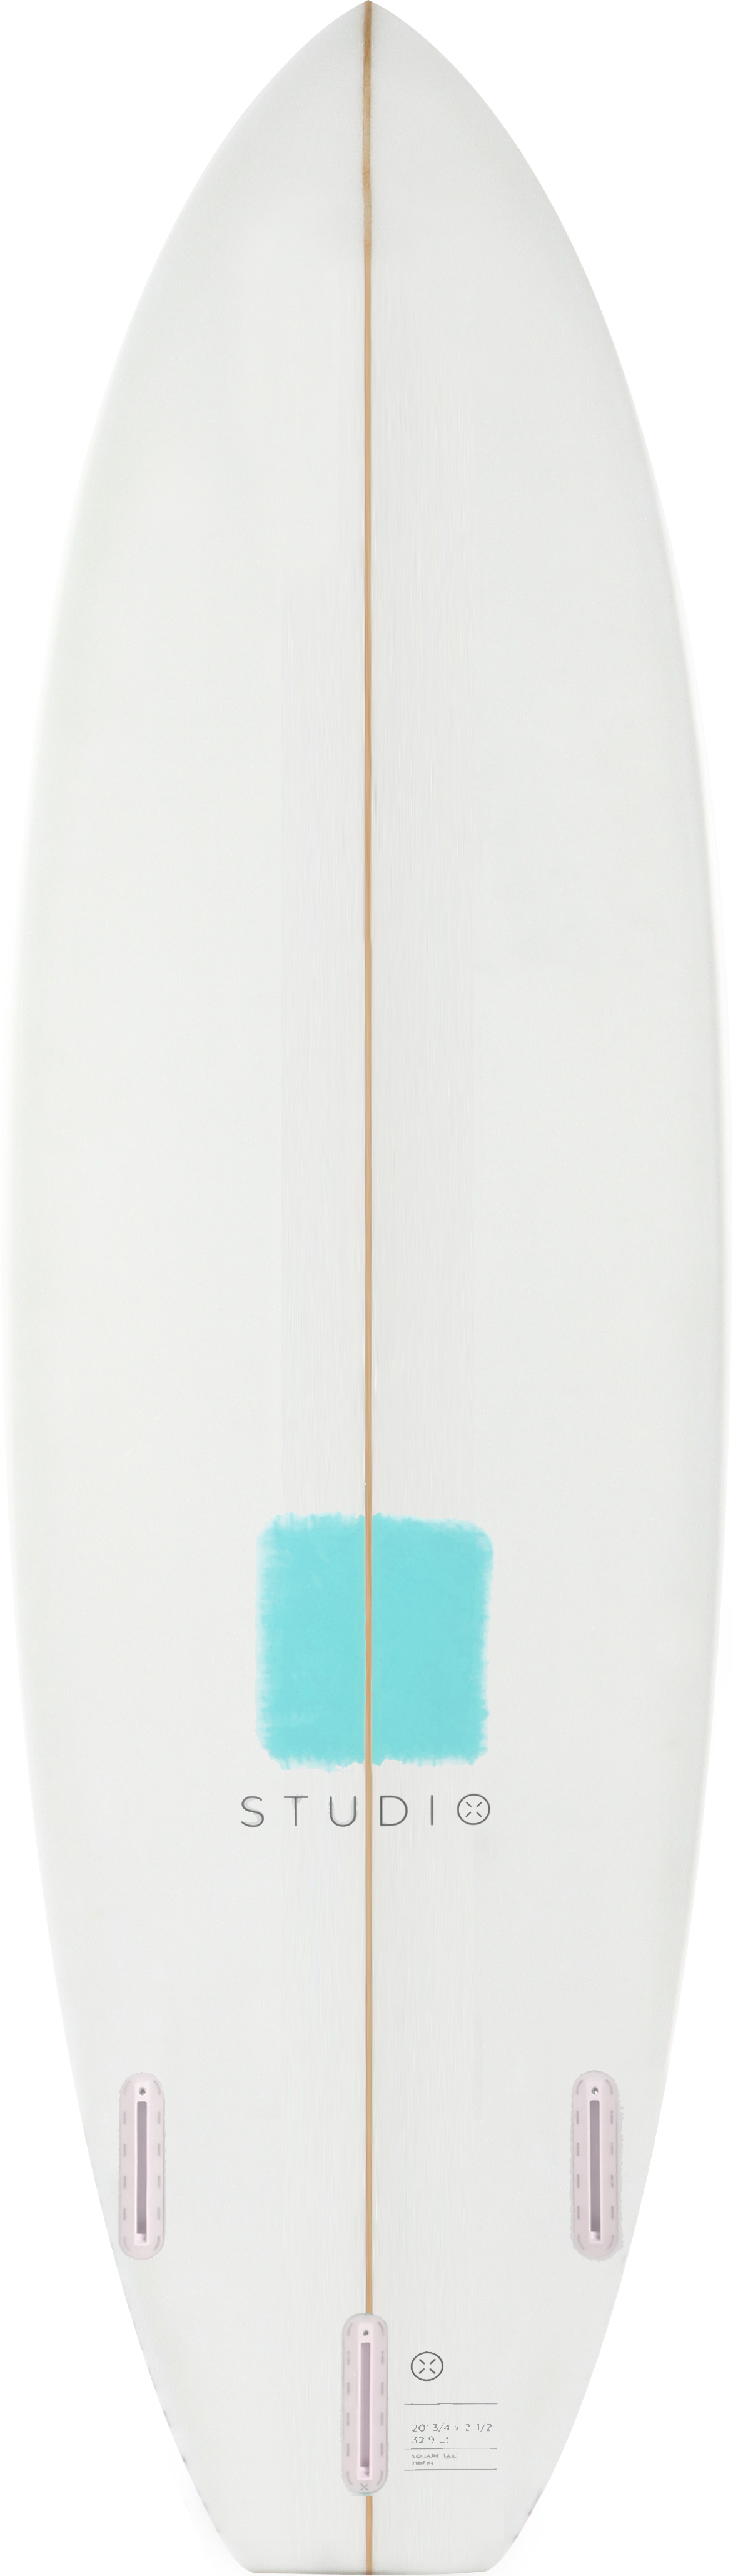 Dekoration Surfbrett - Zoom - 5-4 Weiß/Blaugrün